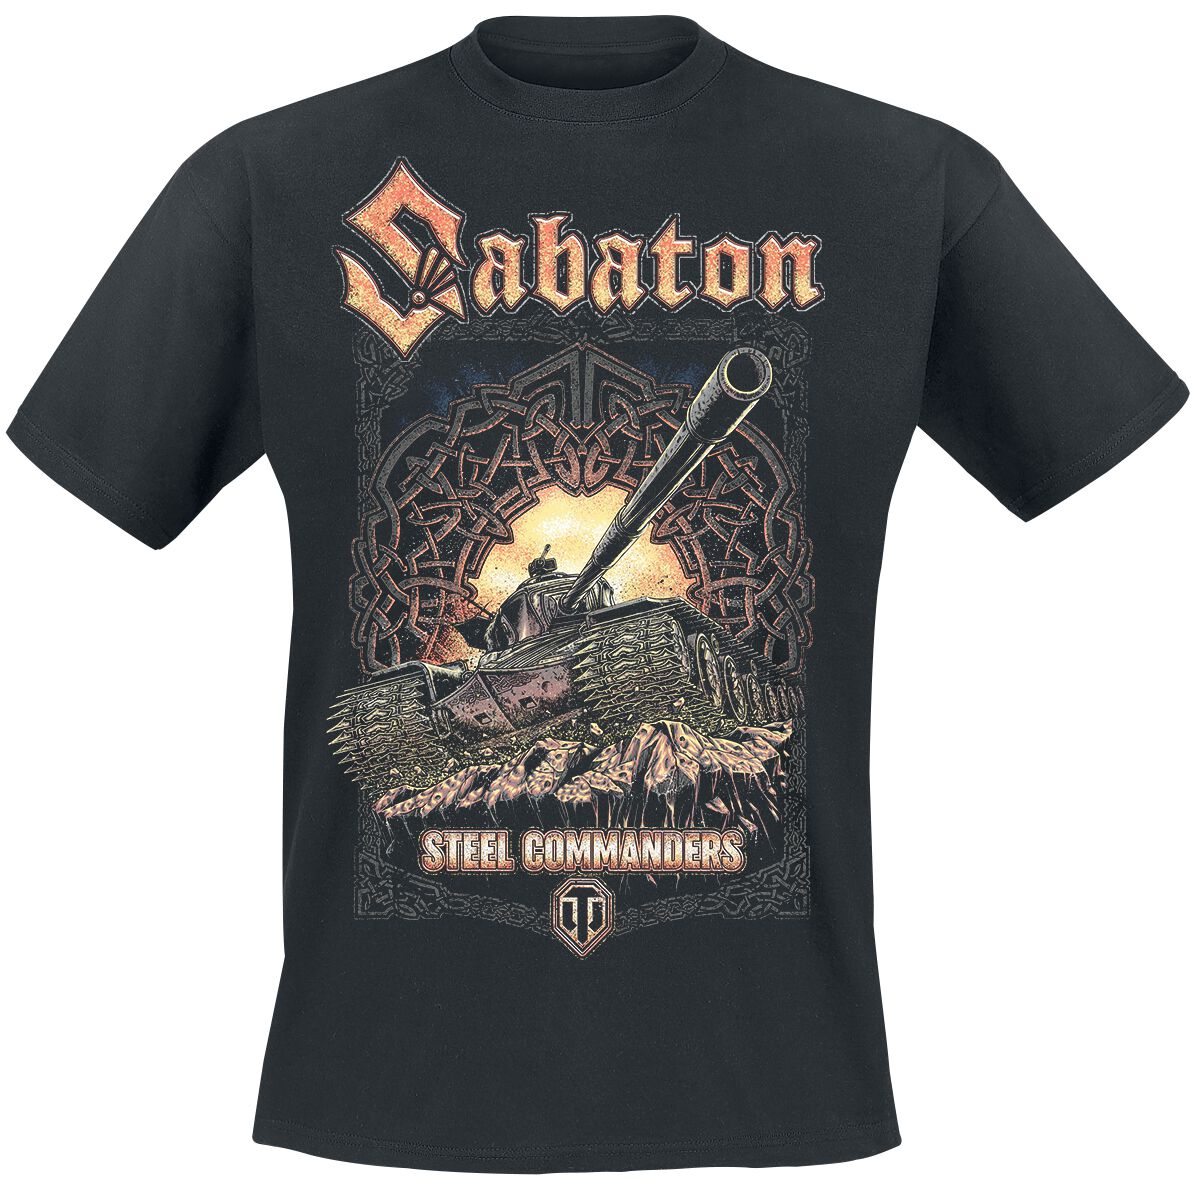 Sabaton - Gaming T-Shirt - World Of Tanks - S bis XXL - für Männer - Größe S - schwarz  - Lizenziertes Merchandise!